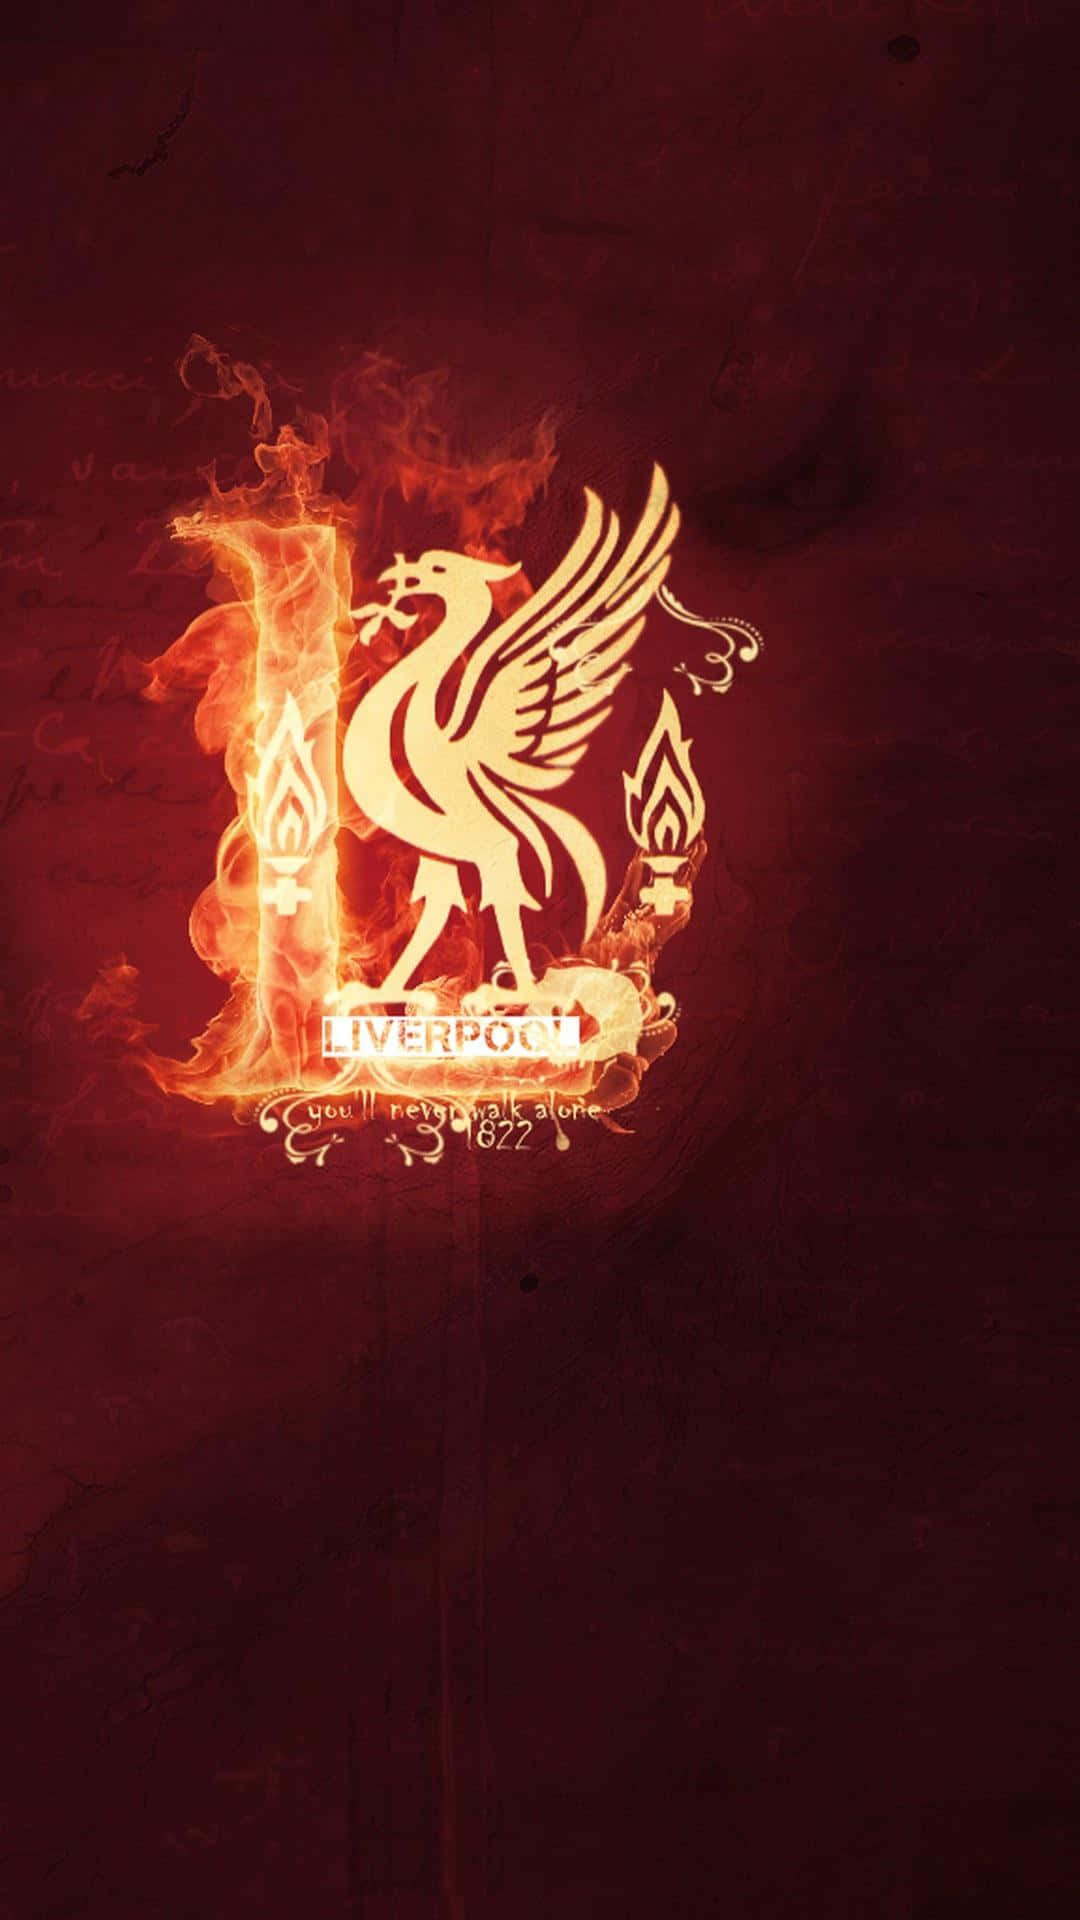 Hold dig opdateret med den officielle Liverpool FC iPhone-app. Wallpaper